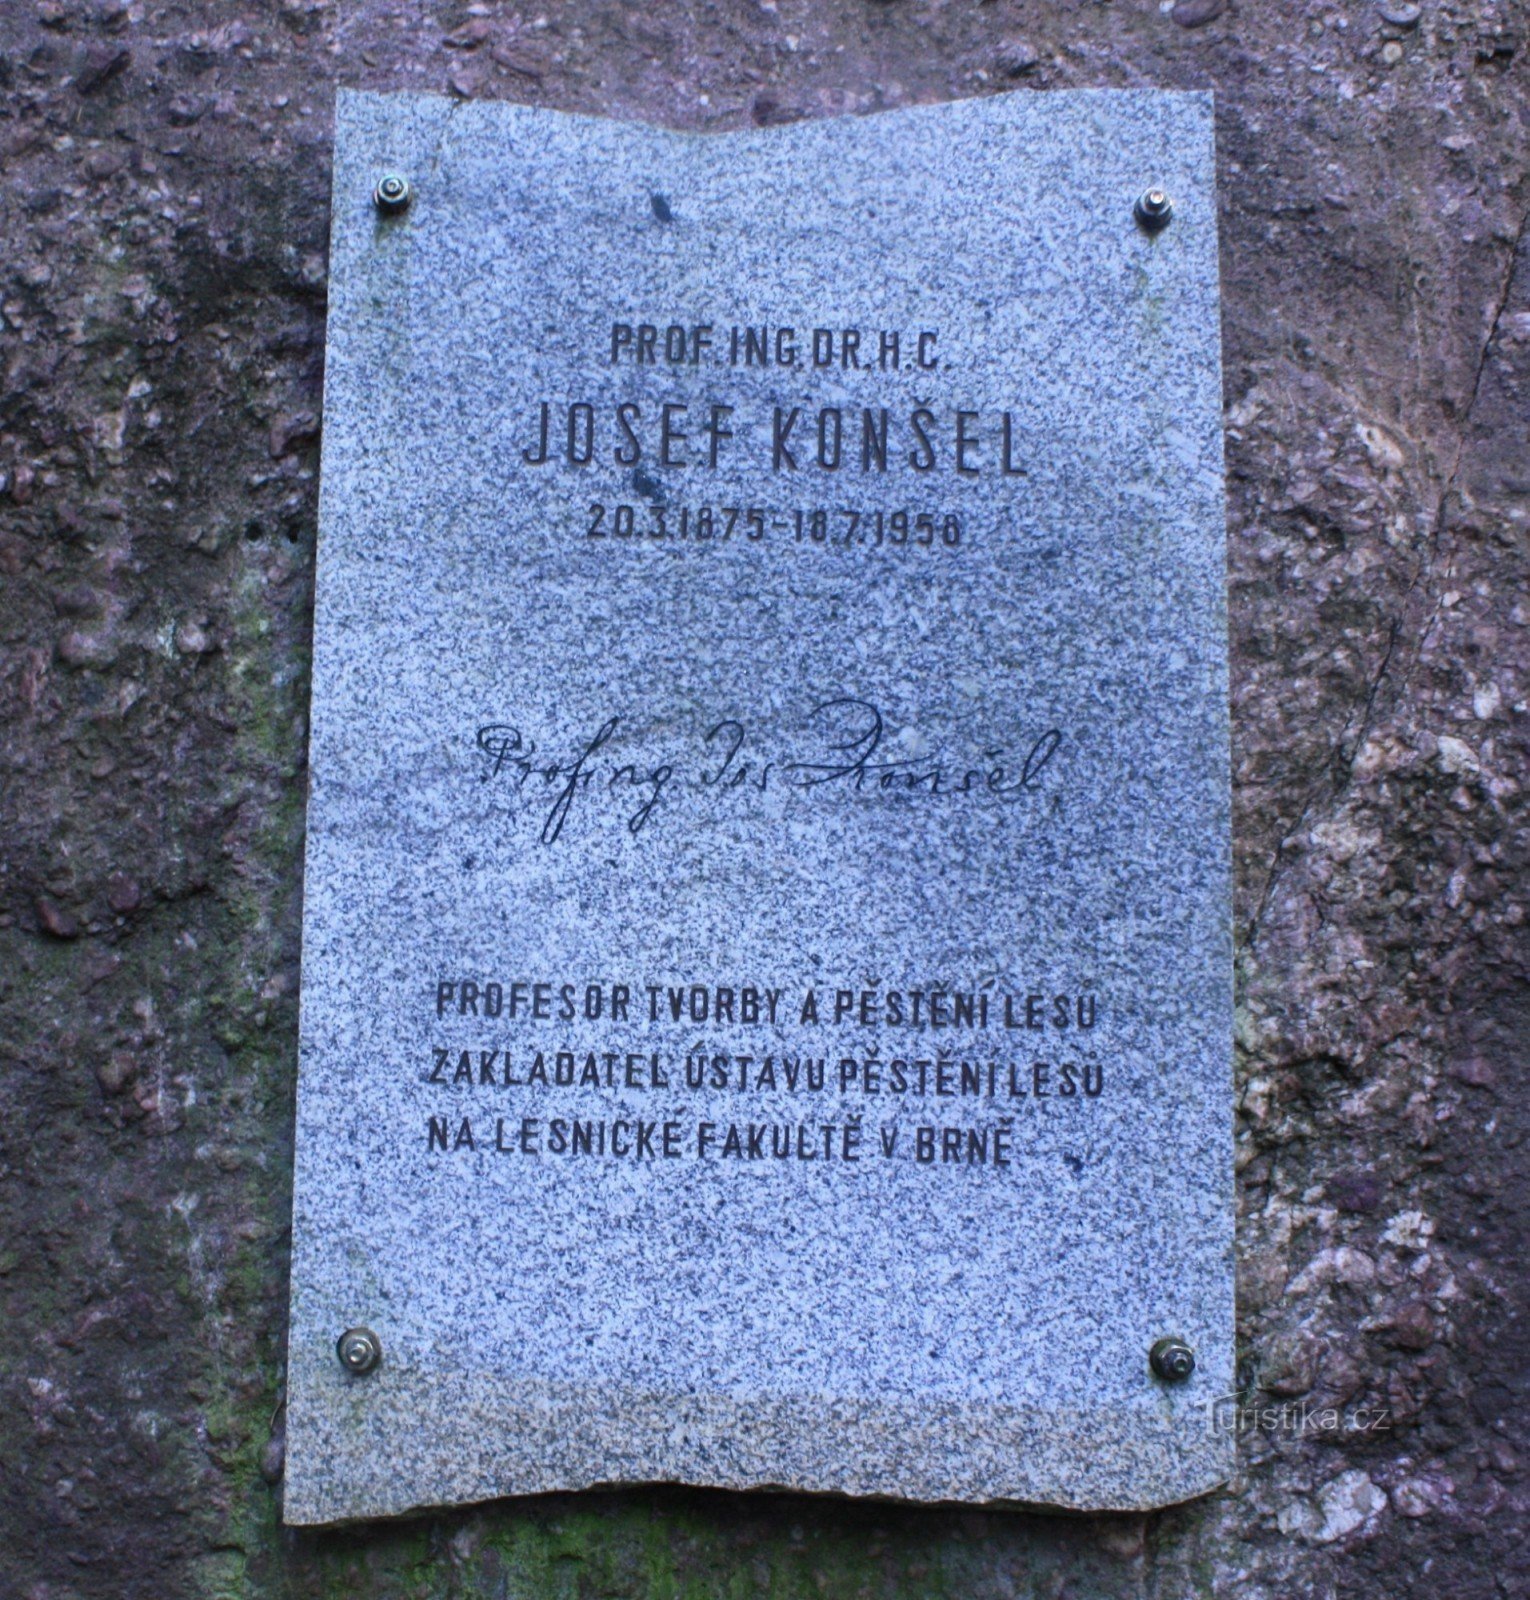 Đài tưởng niệm Josef Konšel